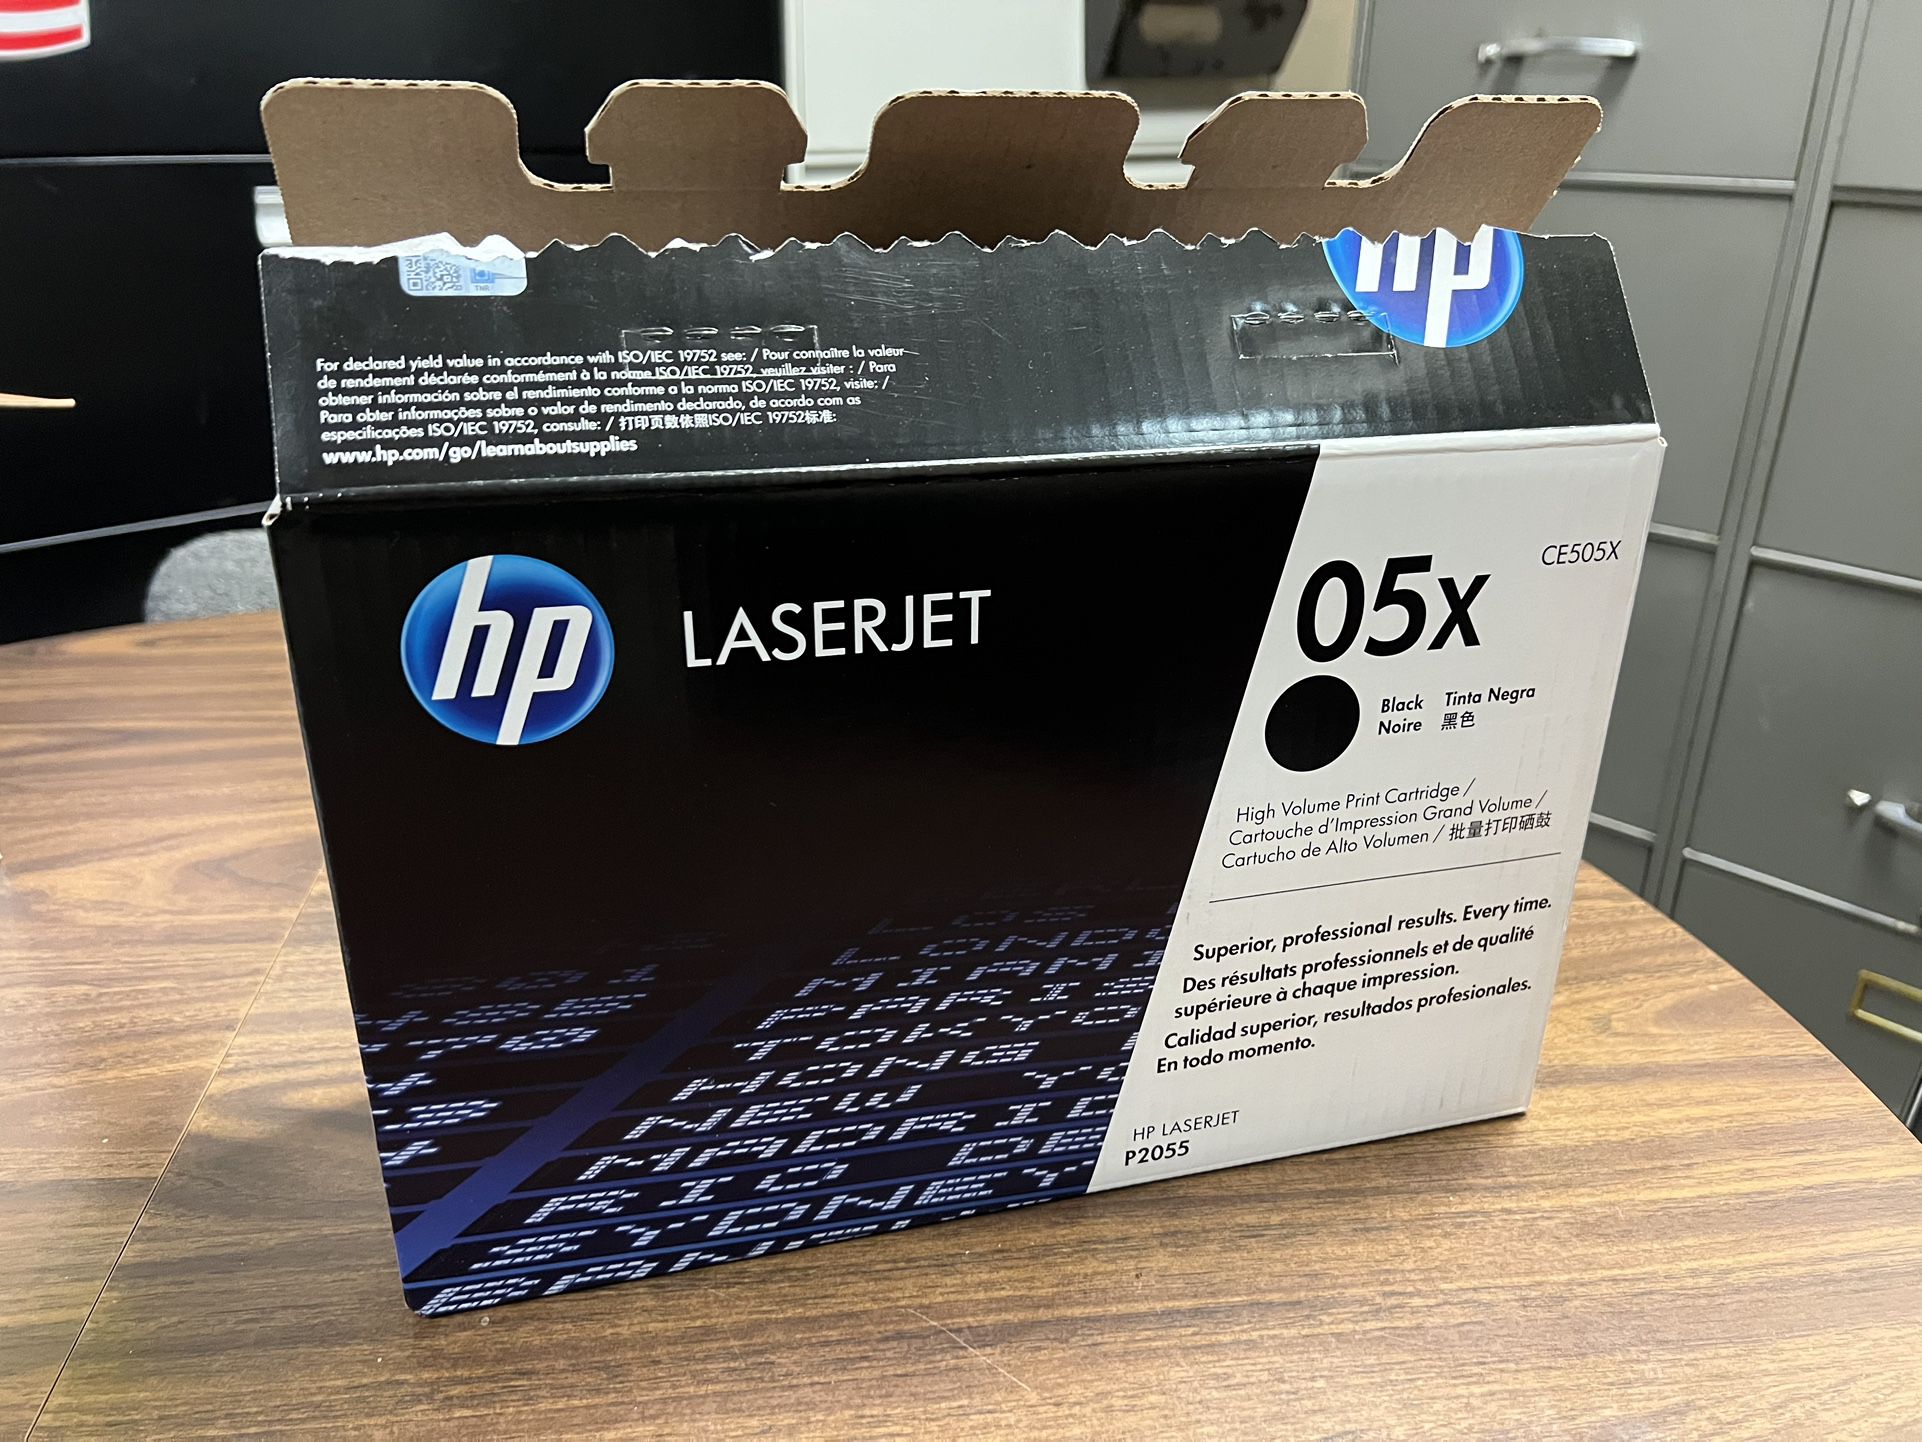 HP LaserJet 05X Ink Cartridge